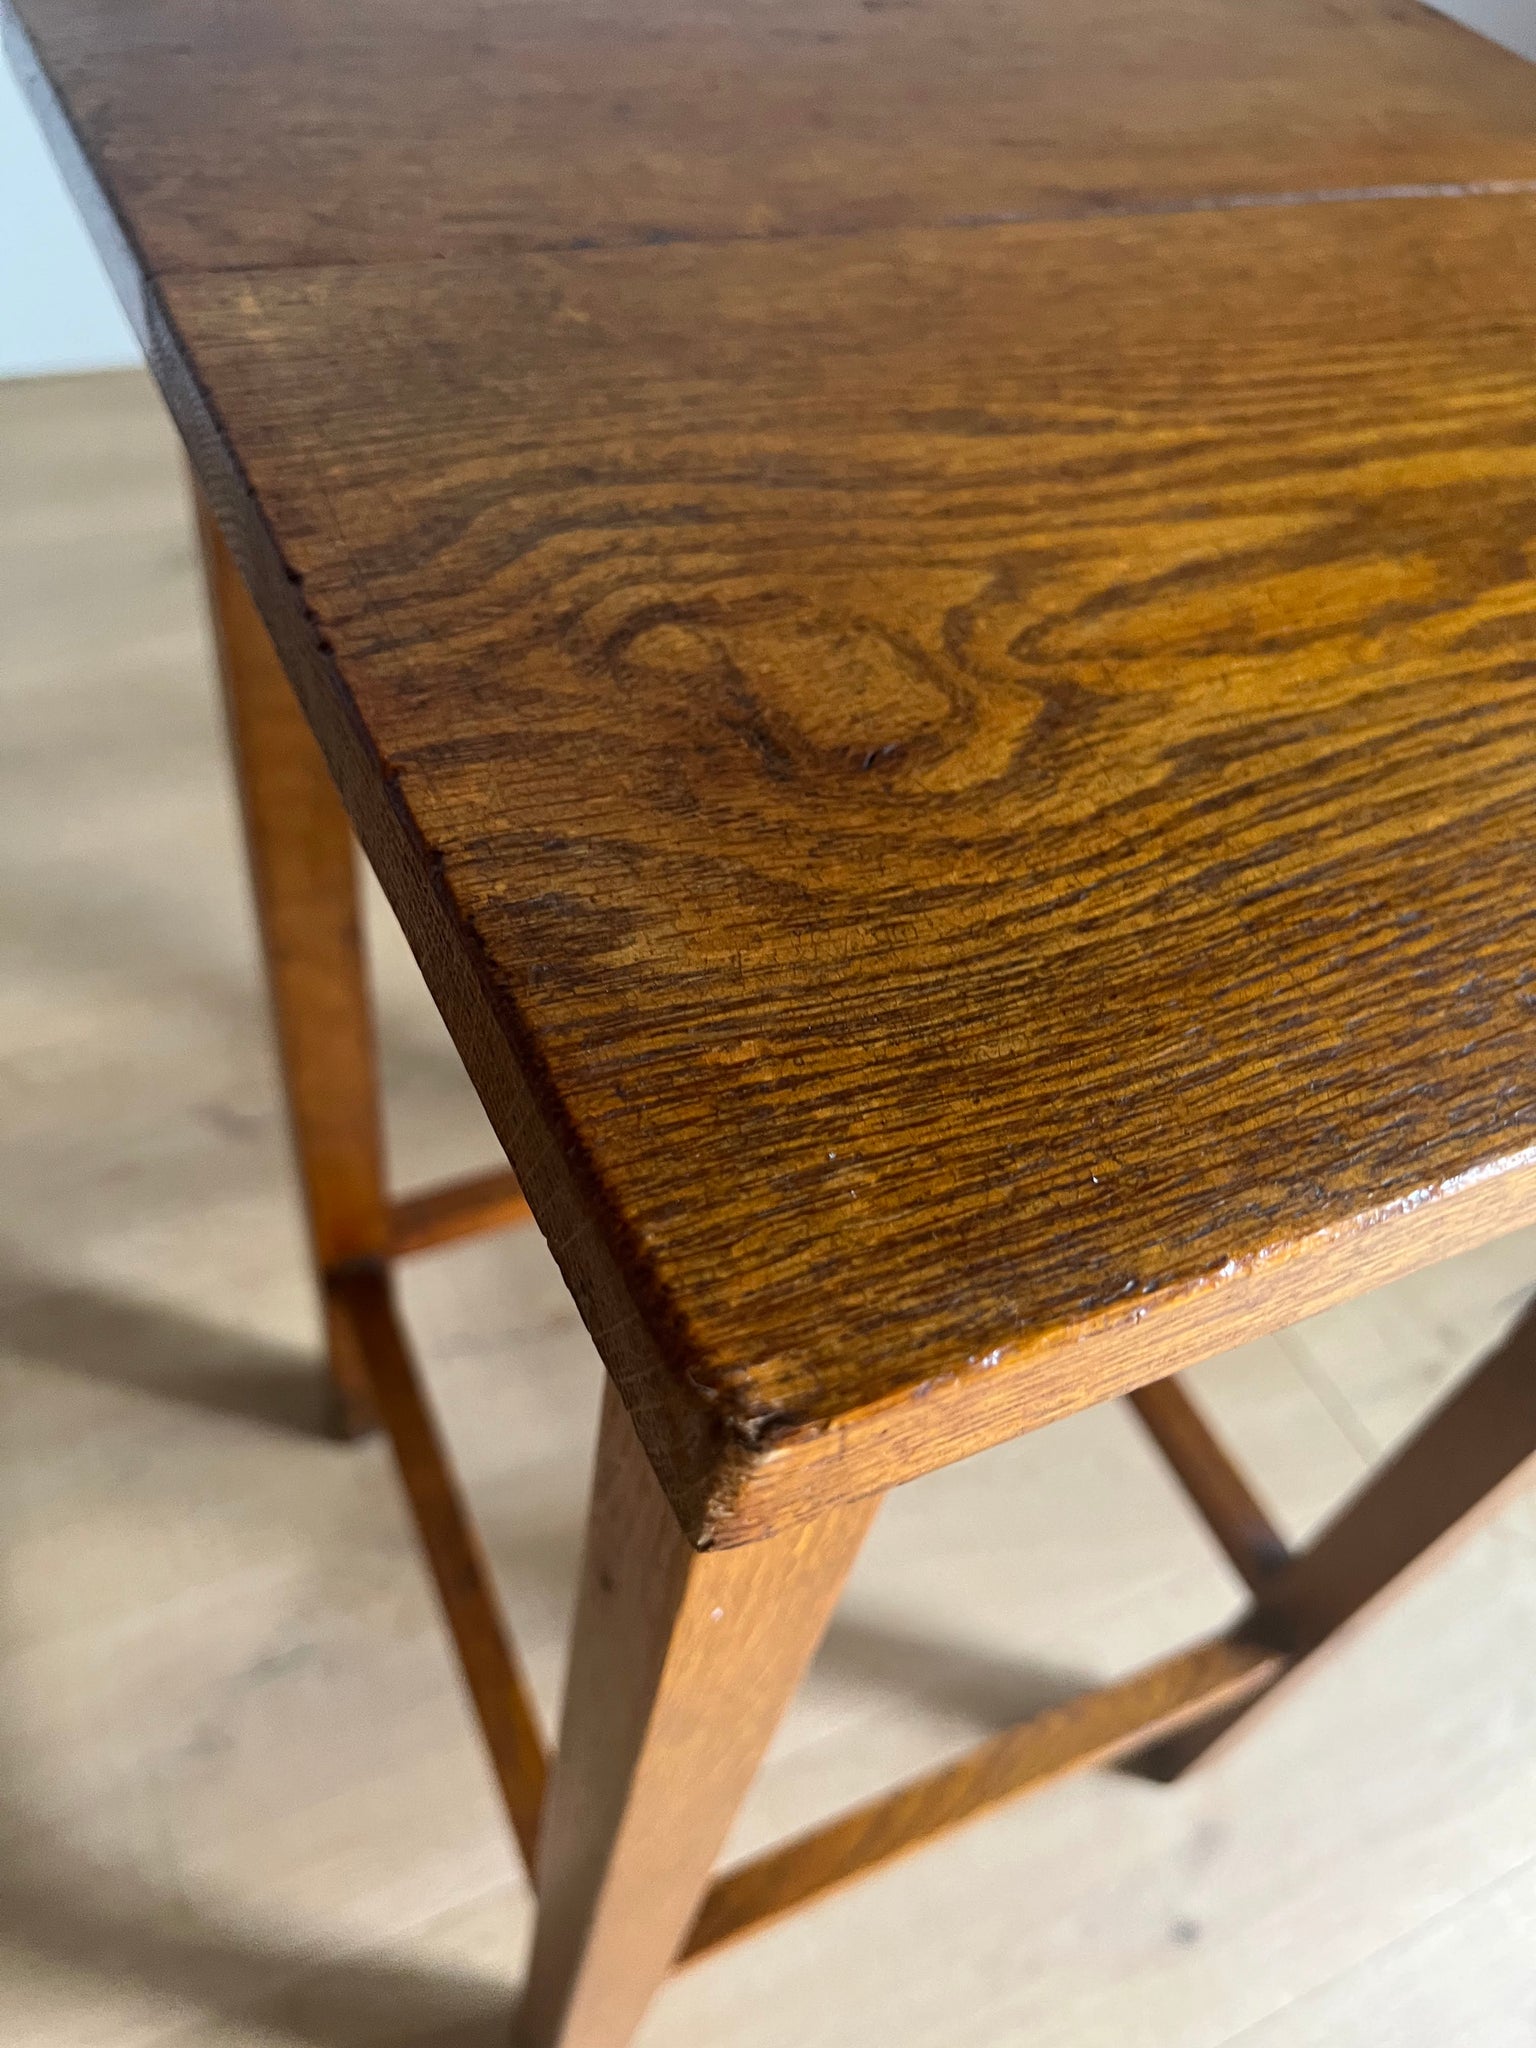 オーク スモール テーブル / oak small table #0248